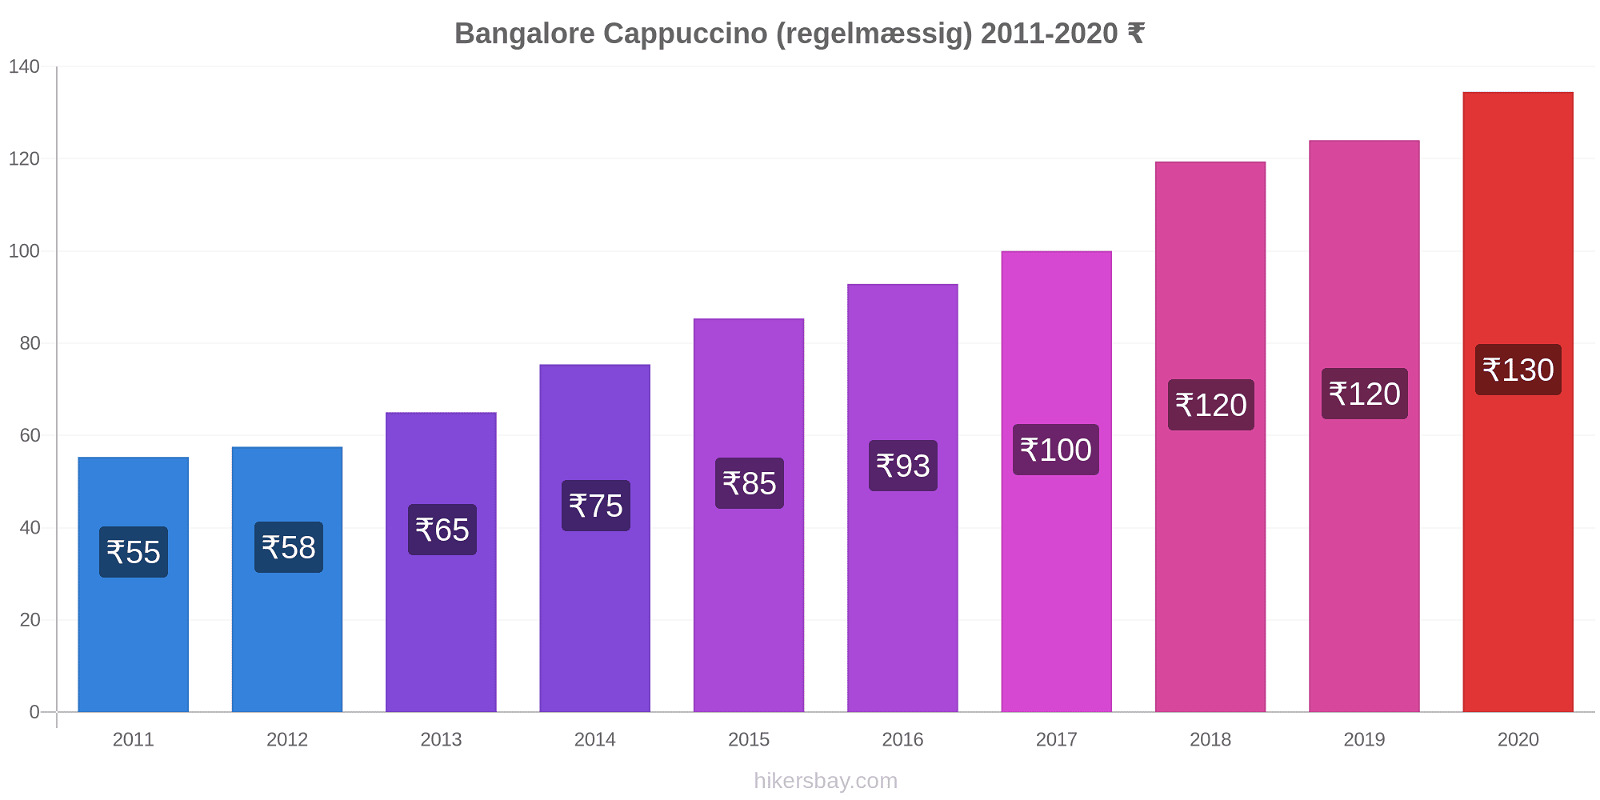 Bangalore prisændringer Cappuccino (regelmæssig) hikersbay.com